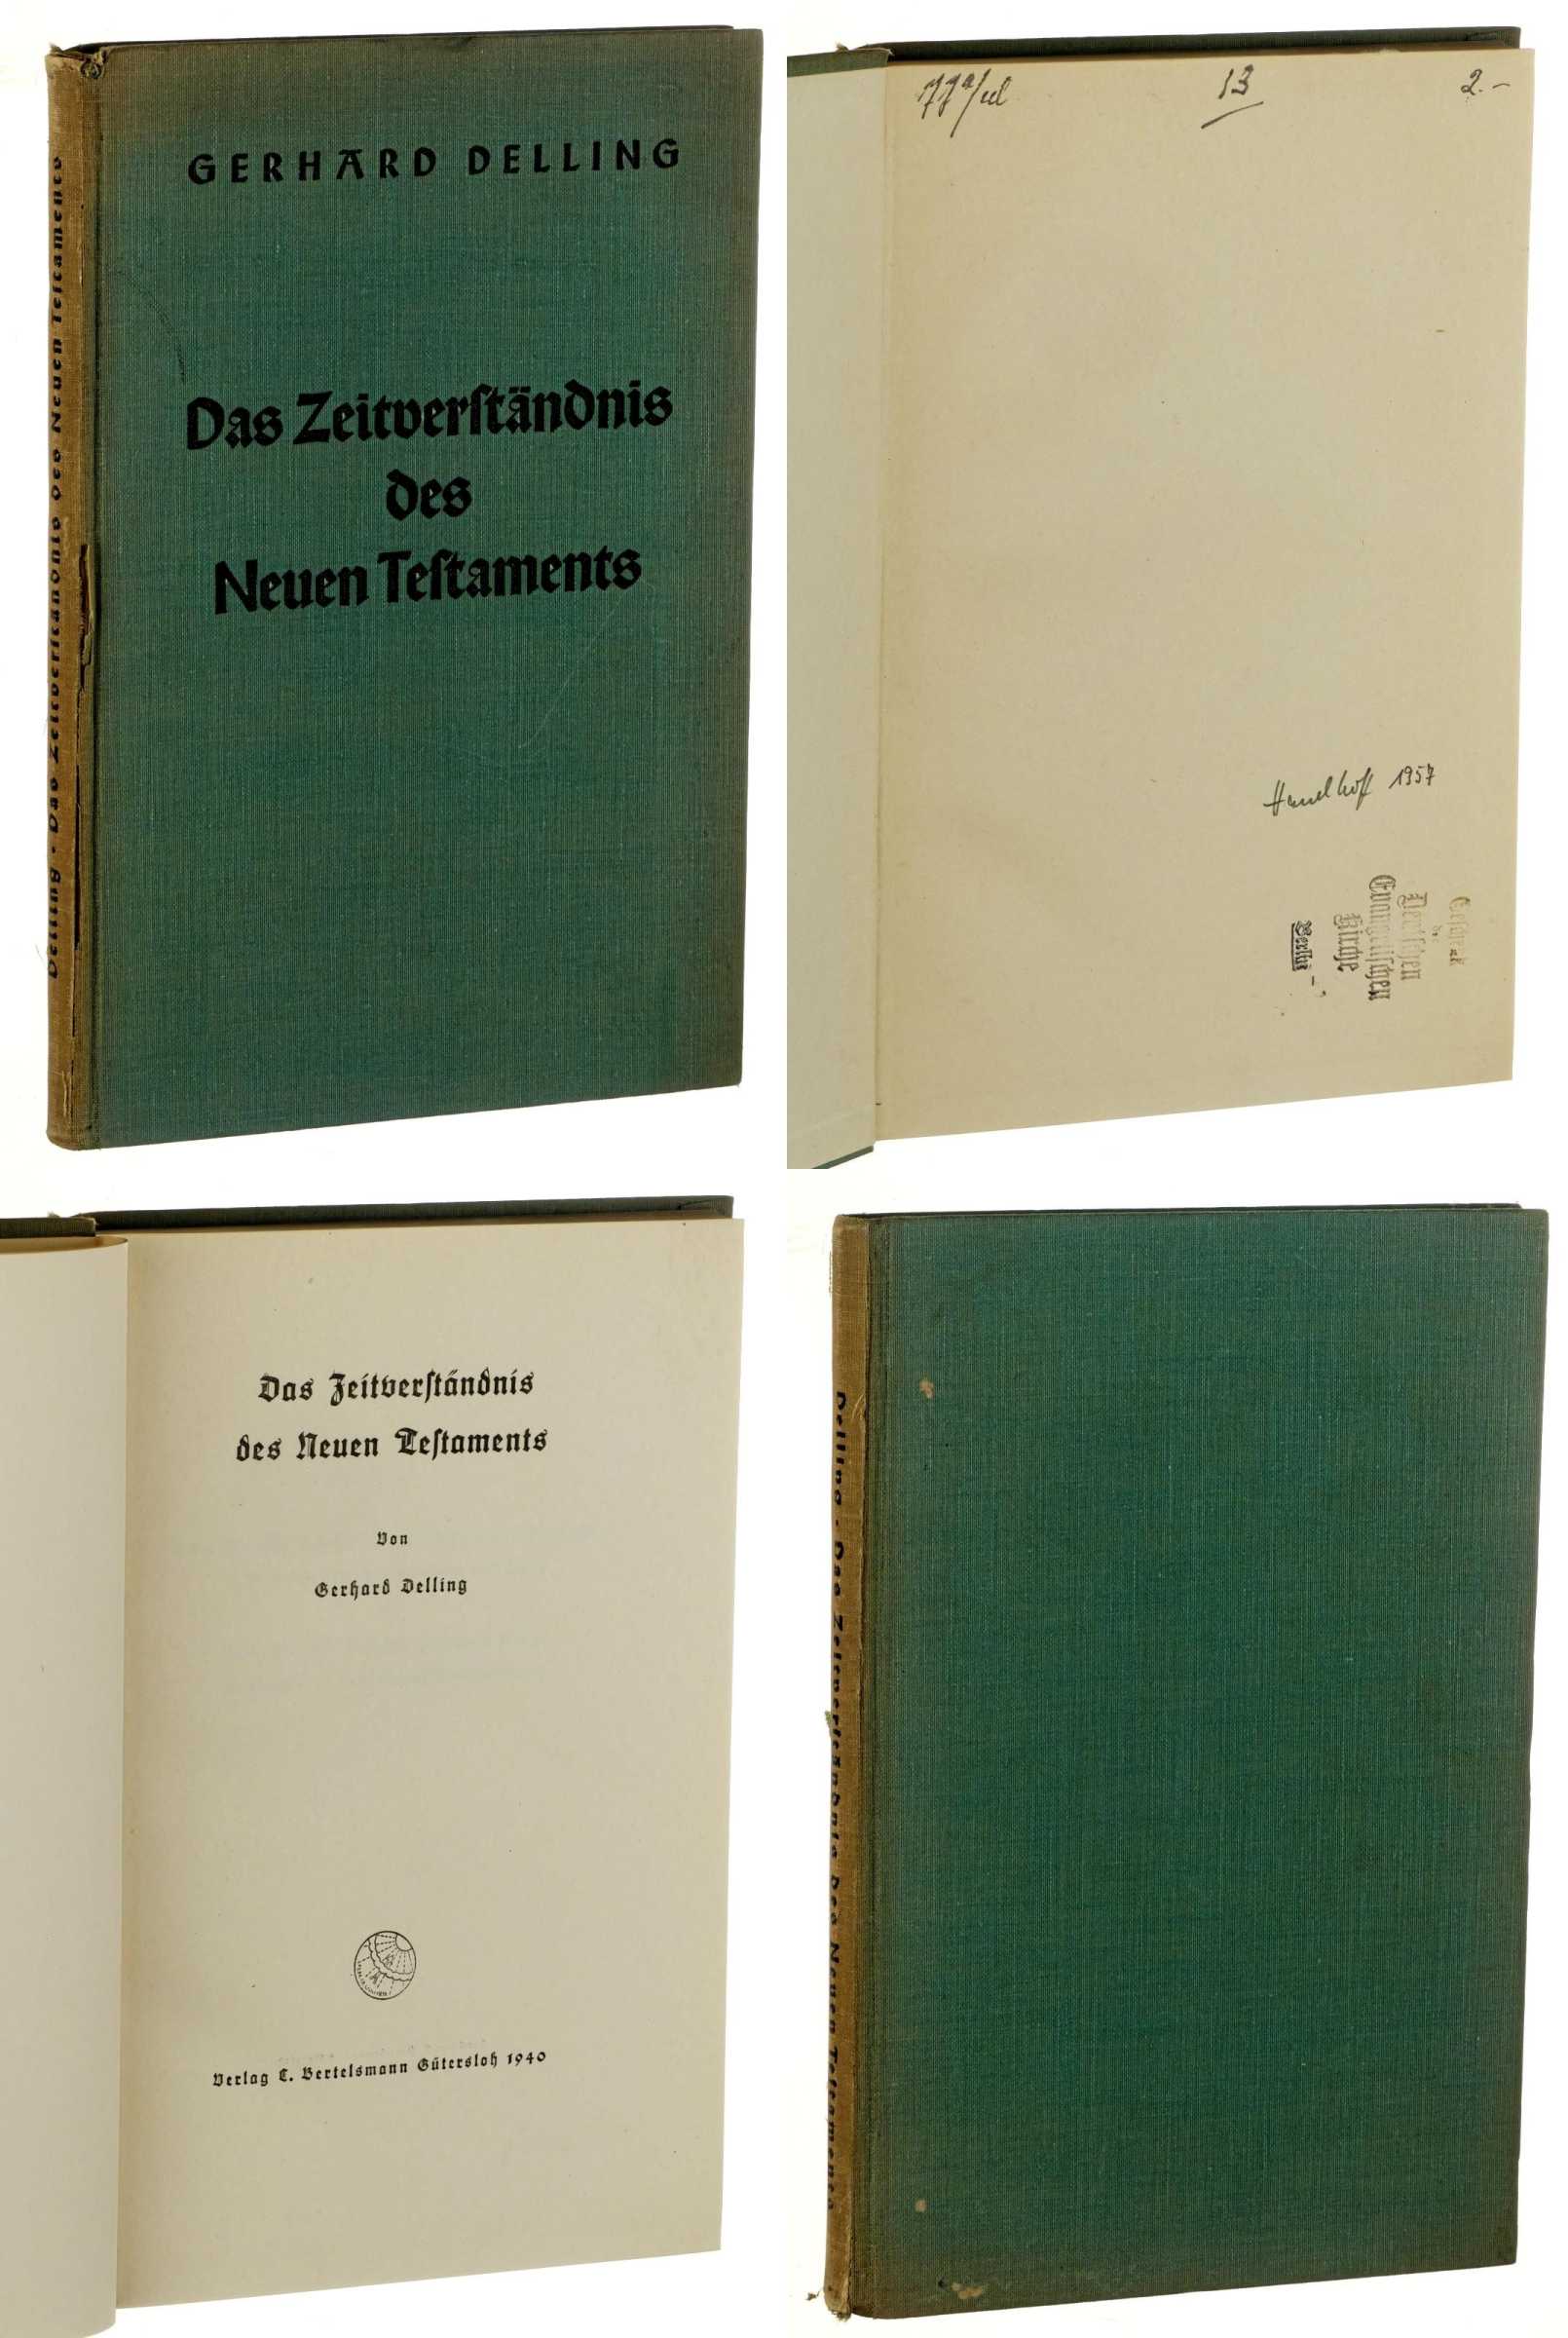 Delling, Gerhard:  Das Zeitverständnis des Neuen Testaments. 